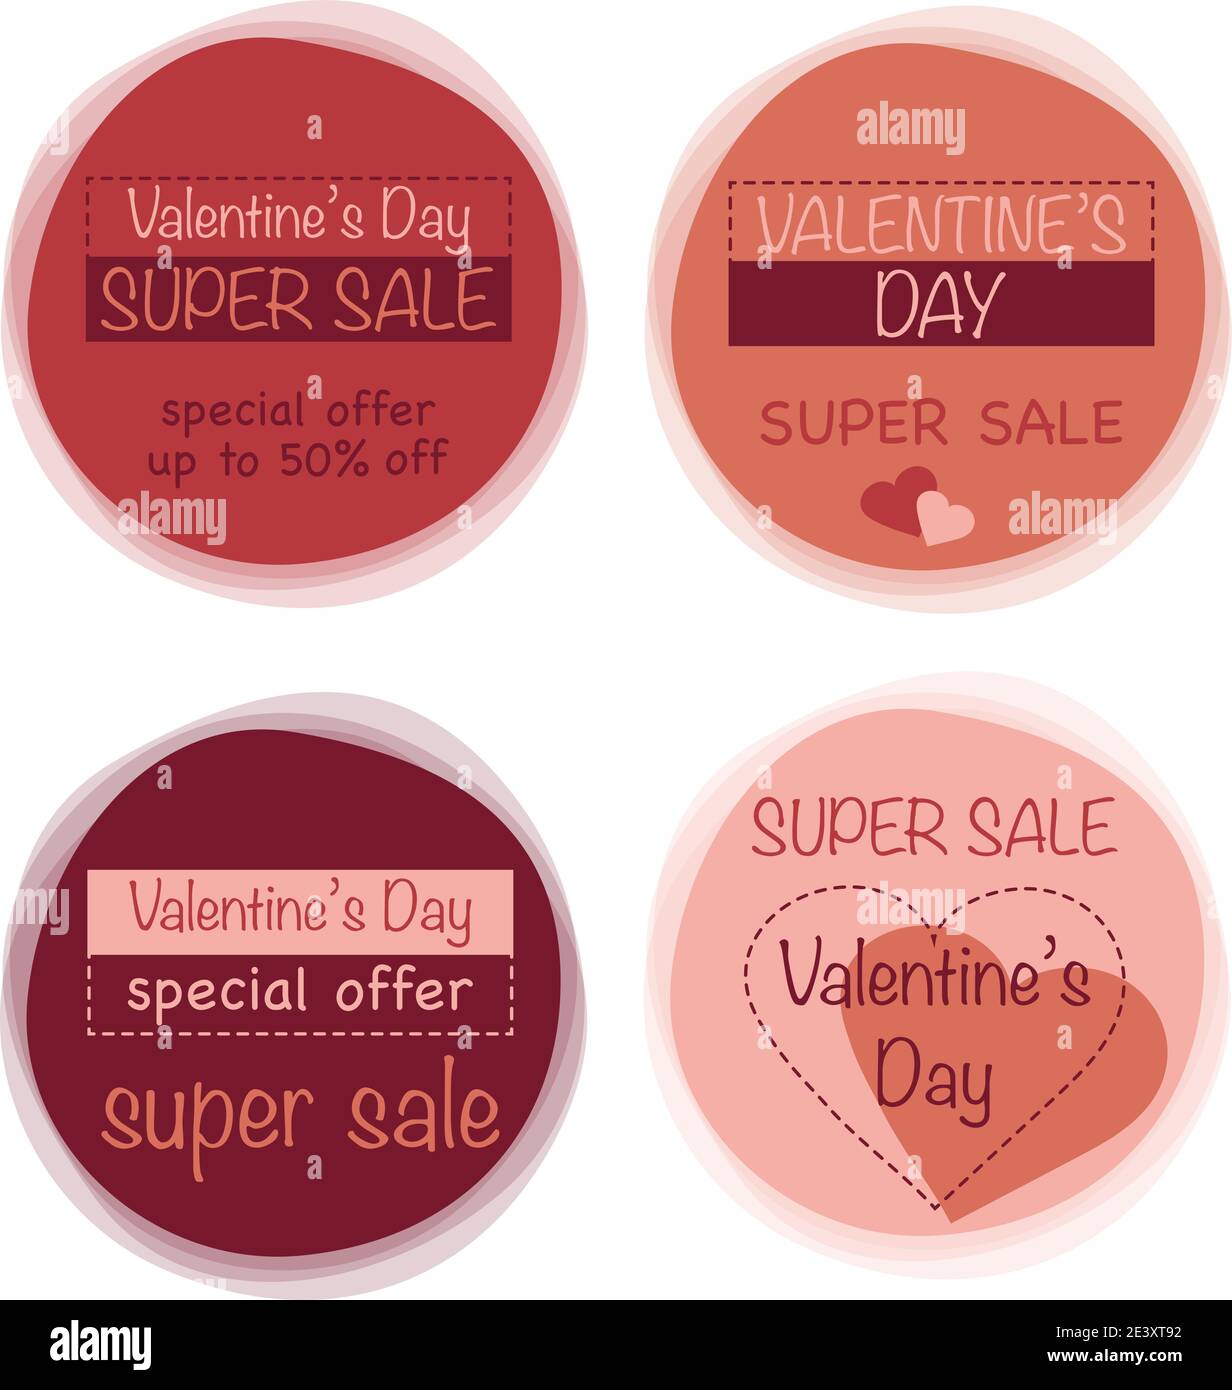 Valentinstag Verkauf Etiketten Vorlage. Set Logo, Sets, Abzeichen, Aufkleber für Valentinstag-Promotion. Vektorgrafik. Stock Vektor